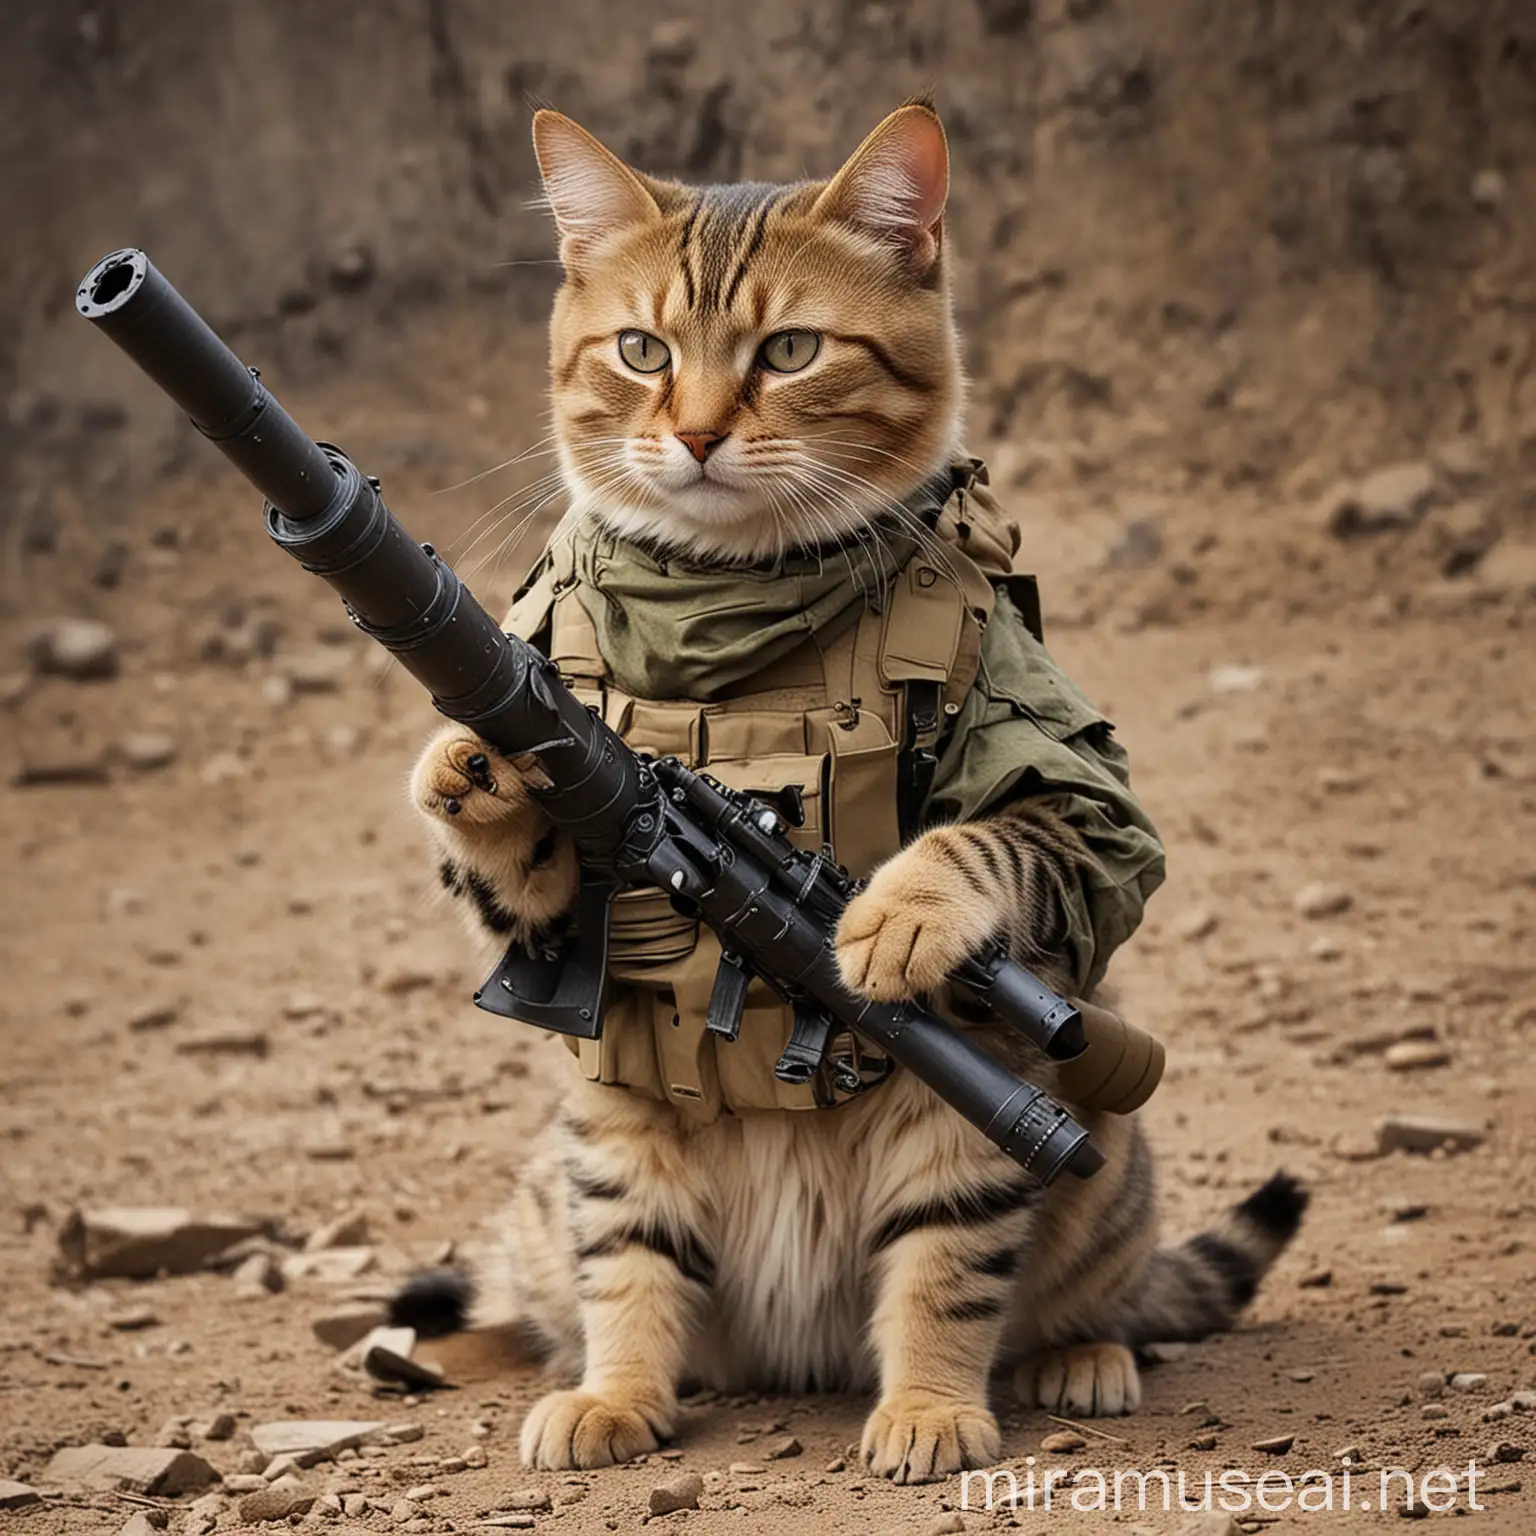 Fierce Cat Warrior Wielding a Bazooka in Battle